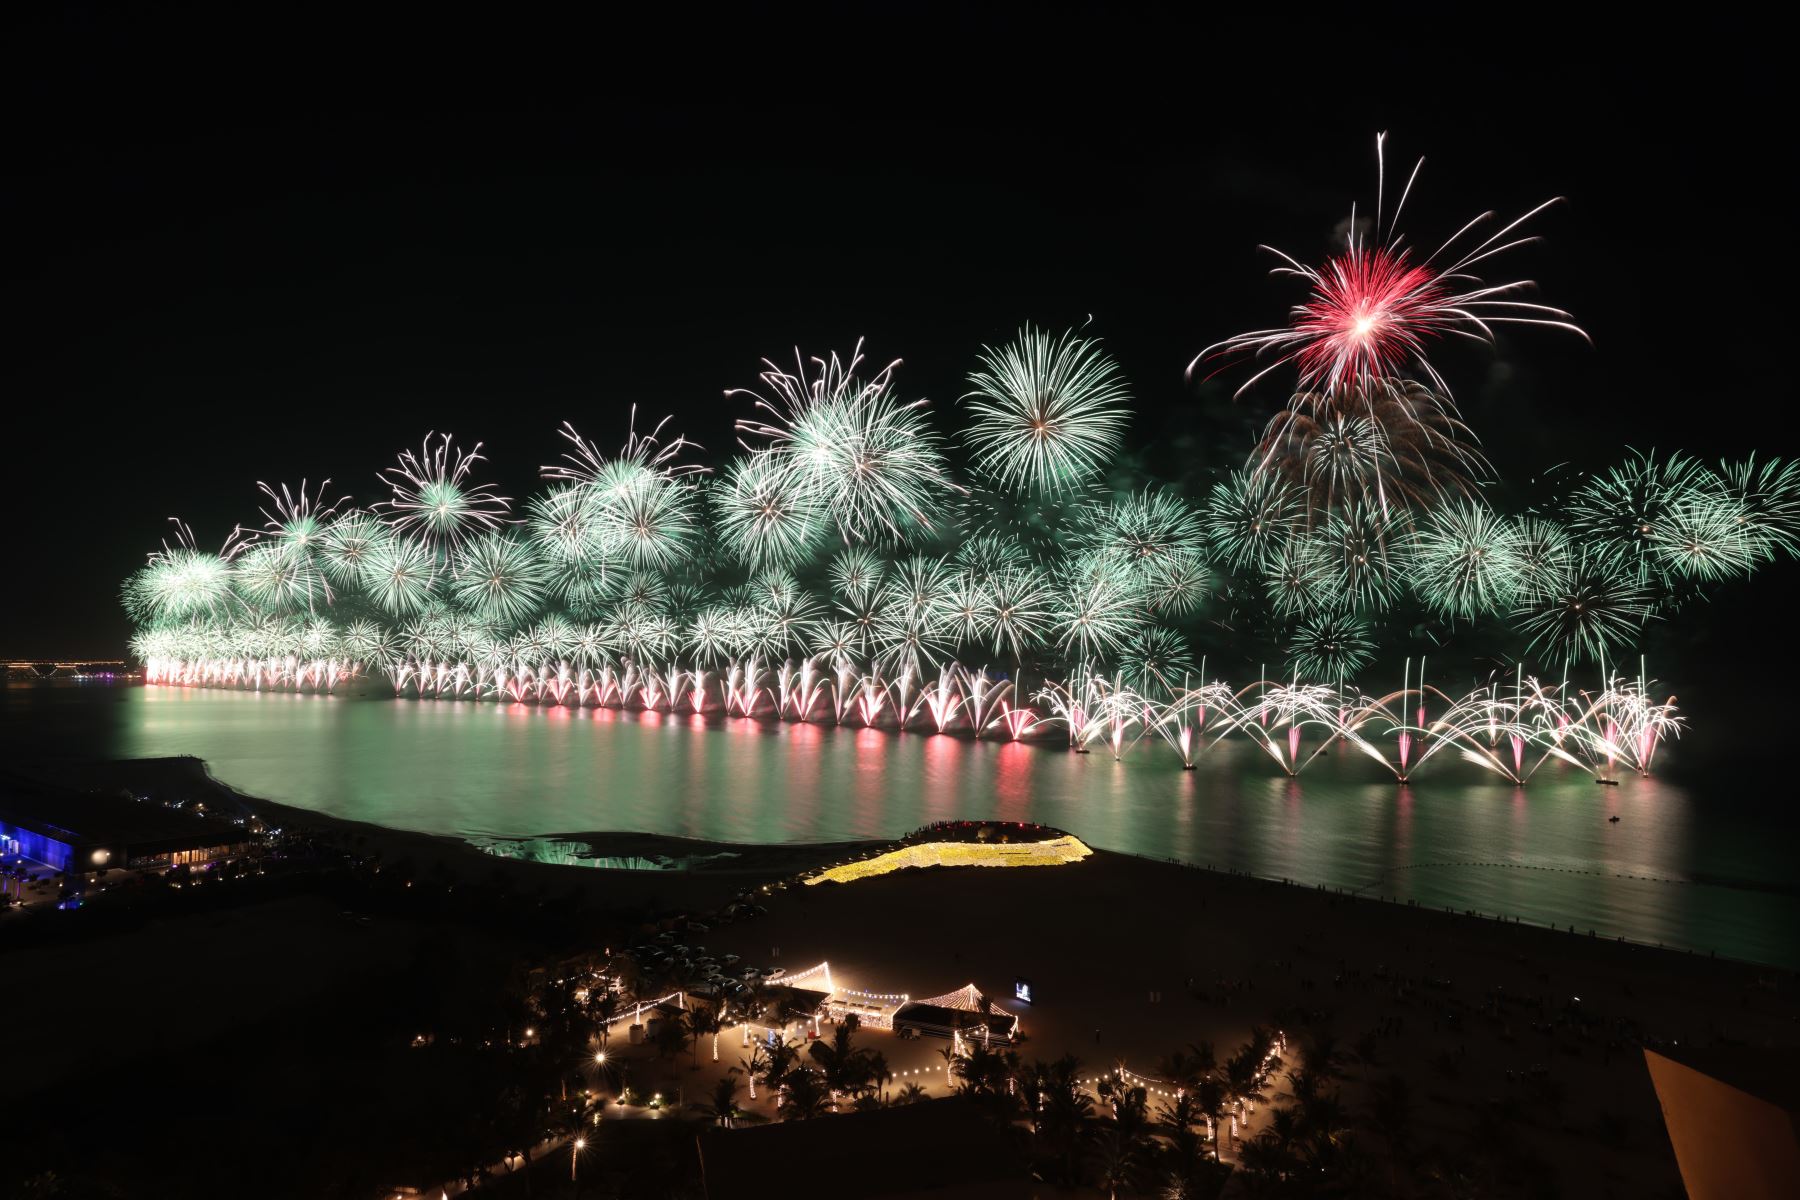 Los fuegos artificiales de Nochevieja estallaron sobre Ras al-Khaimah, uno de los espectáculos de fuegos artificiales más grandes del mundo.
Foto: AFP